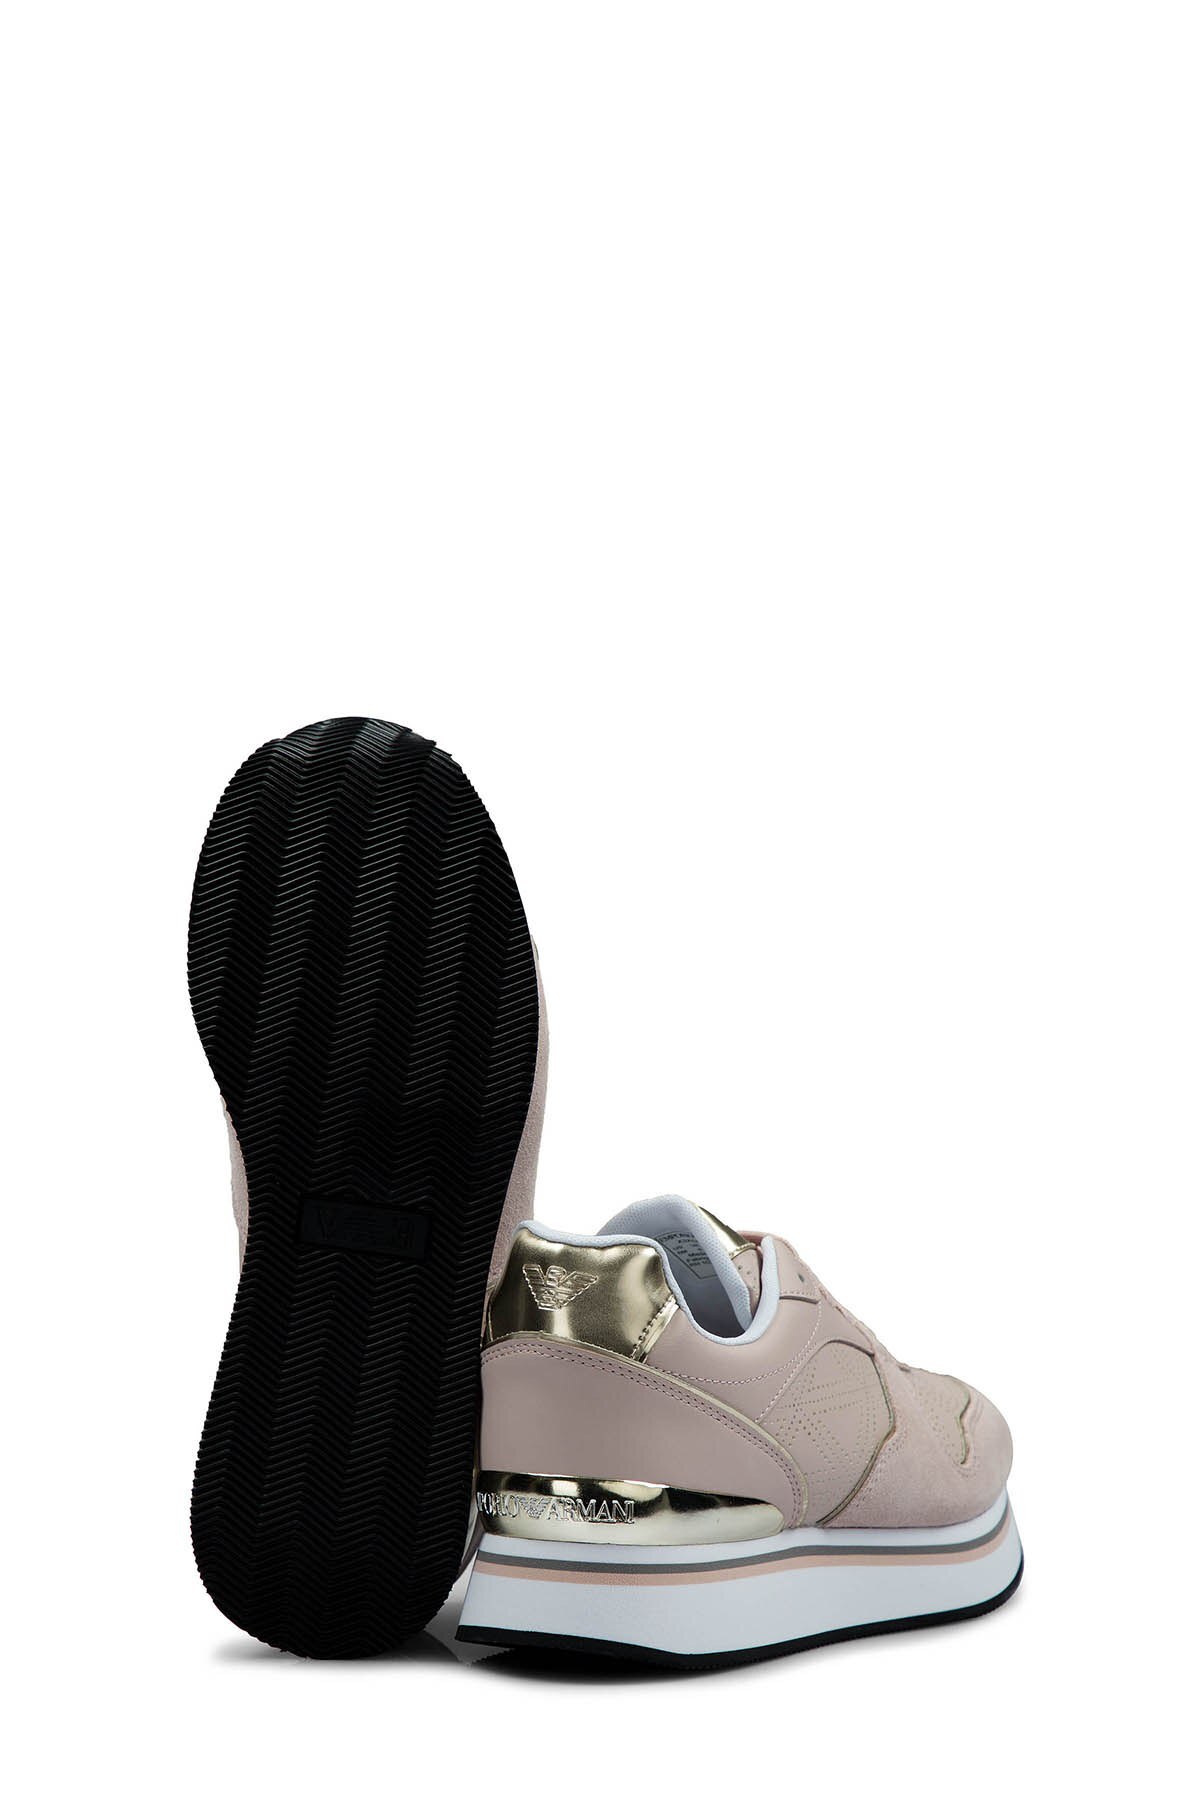 Emporio Armani Kadın Ayakkabı X3X046 XL860 N887 PUDRA